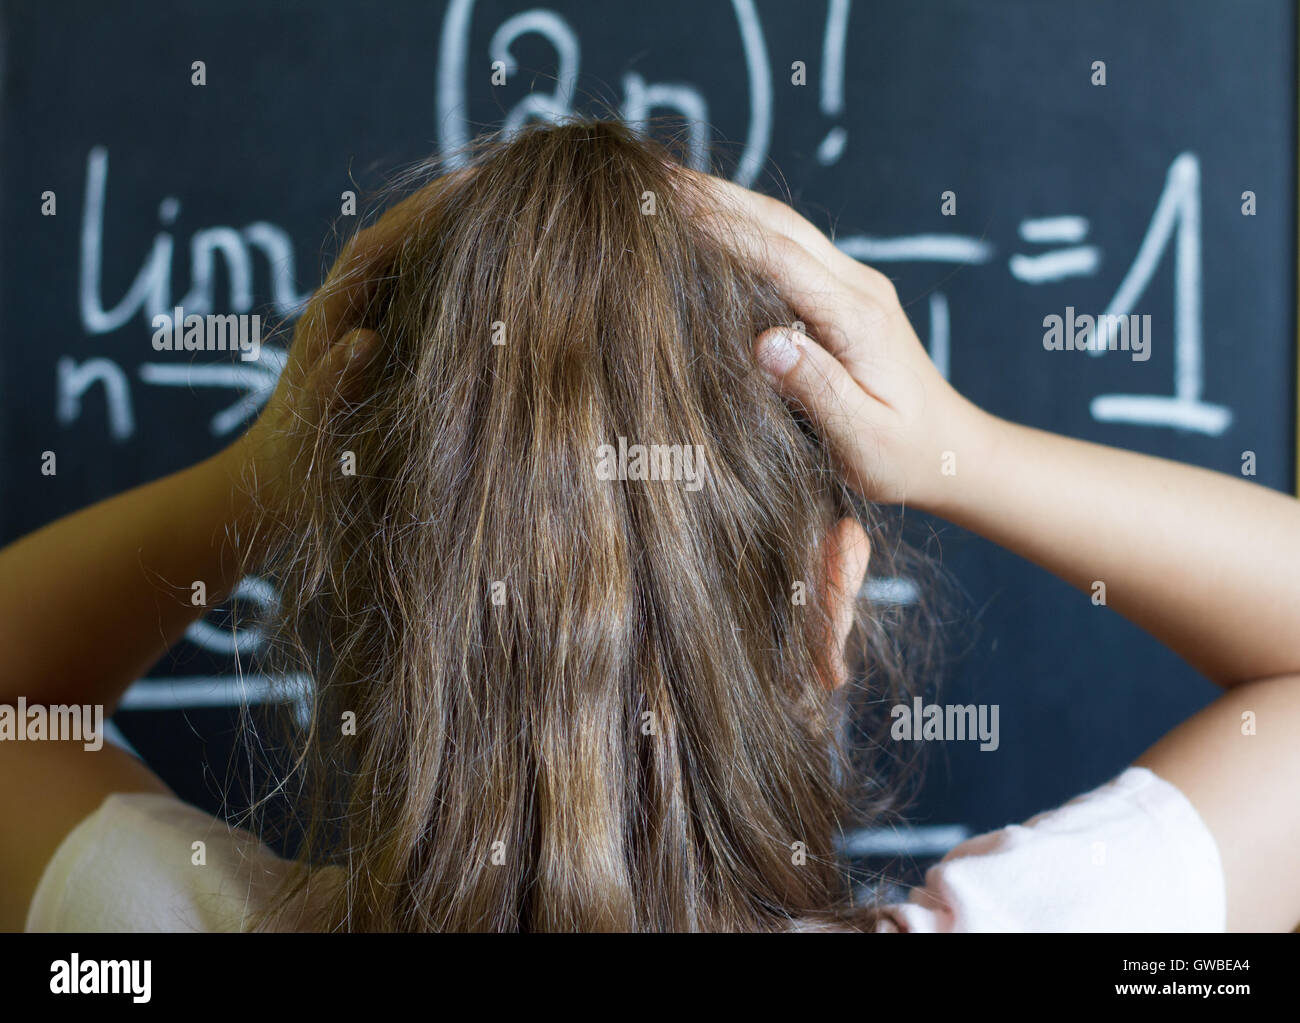 Schoolgirl thinks on the difficult task of mathematics on blackboard Stock Photo